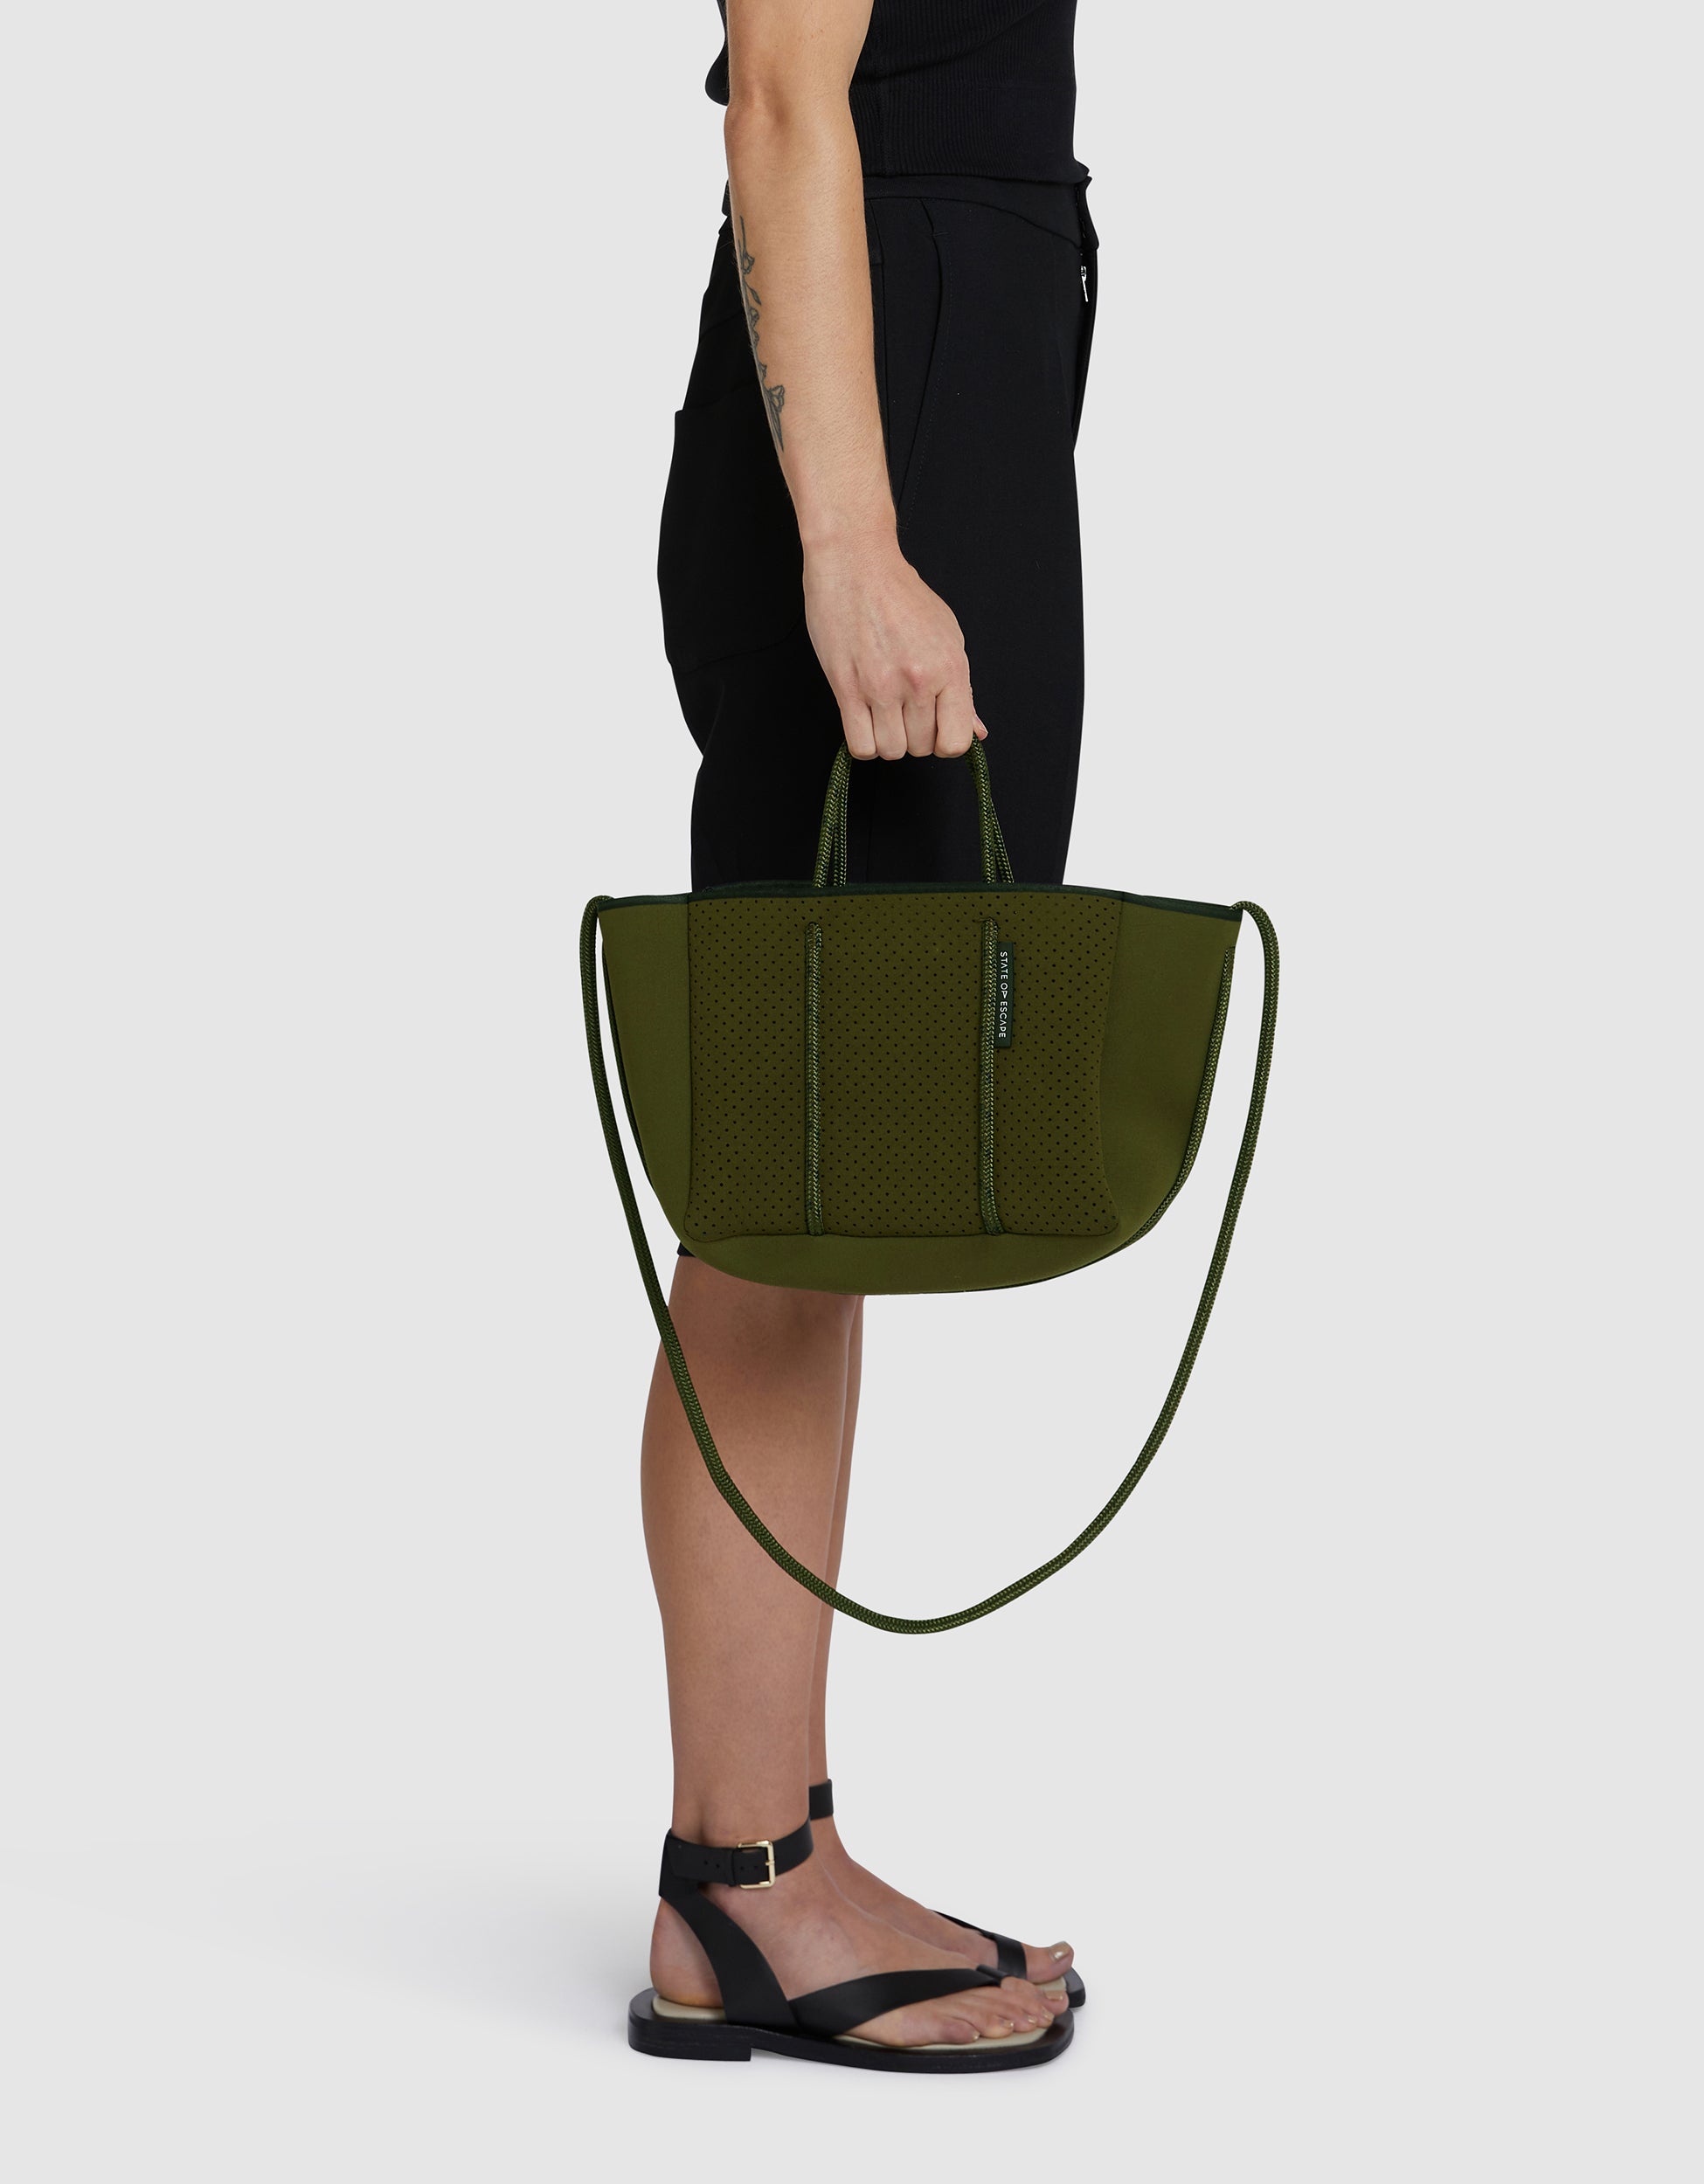 Australian Designer Tote Bags | Mini Tote Bag | Petite Escape Collection –  State of Escape